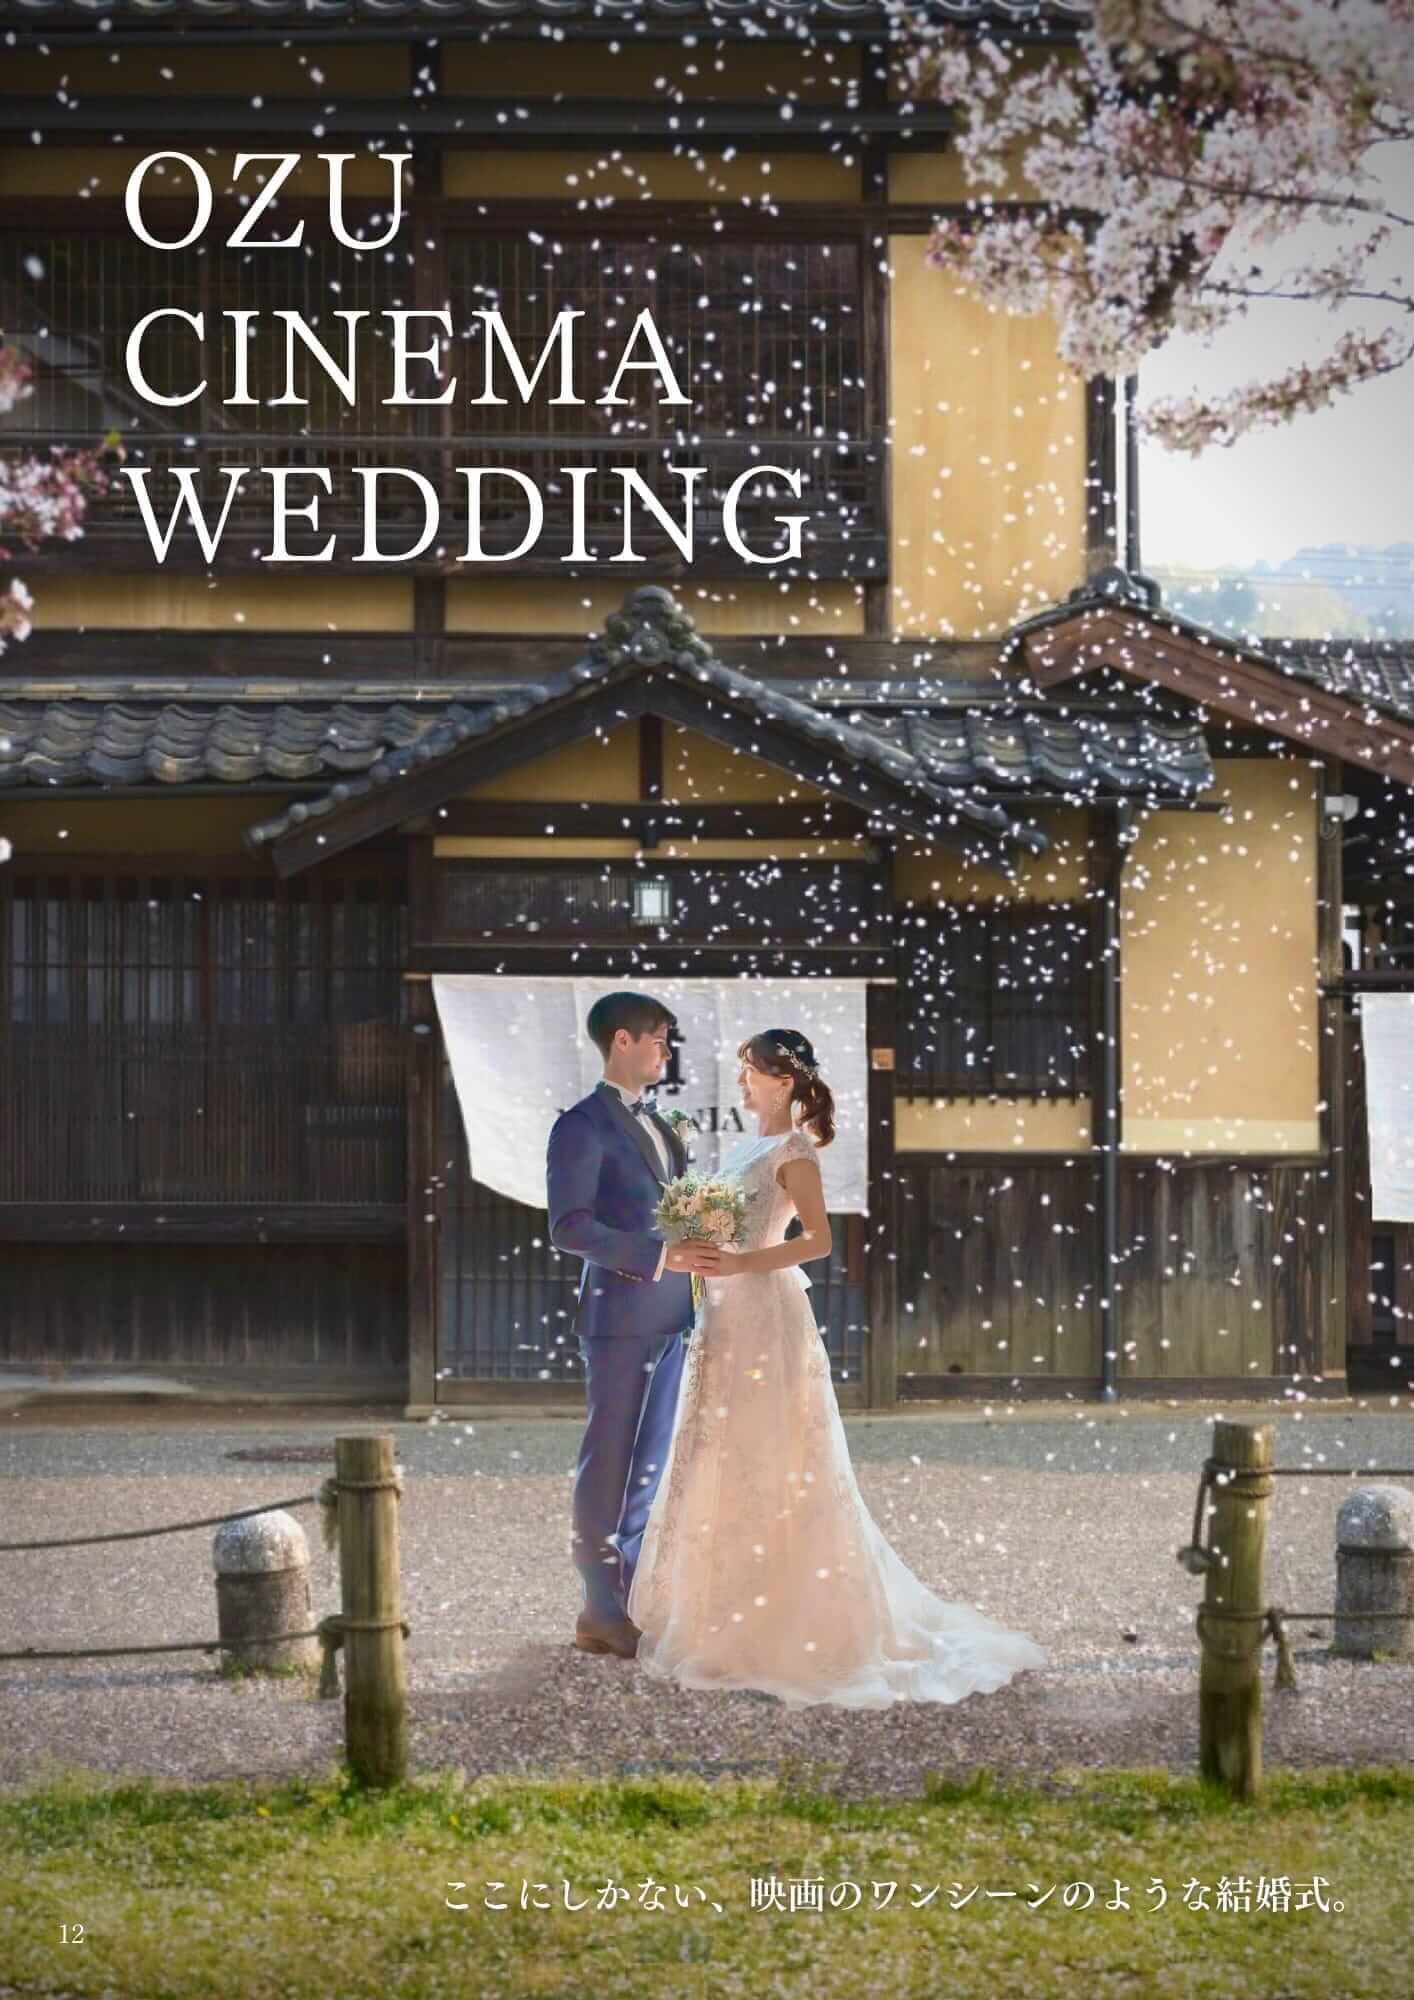 OZU CINEMA WEDDING パンフレット表紙